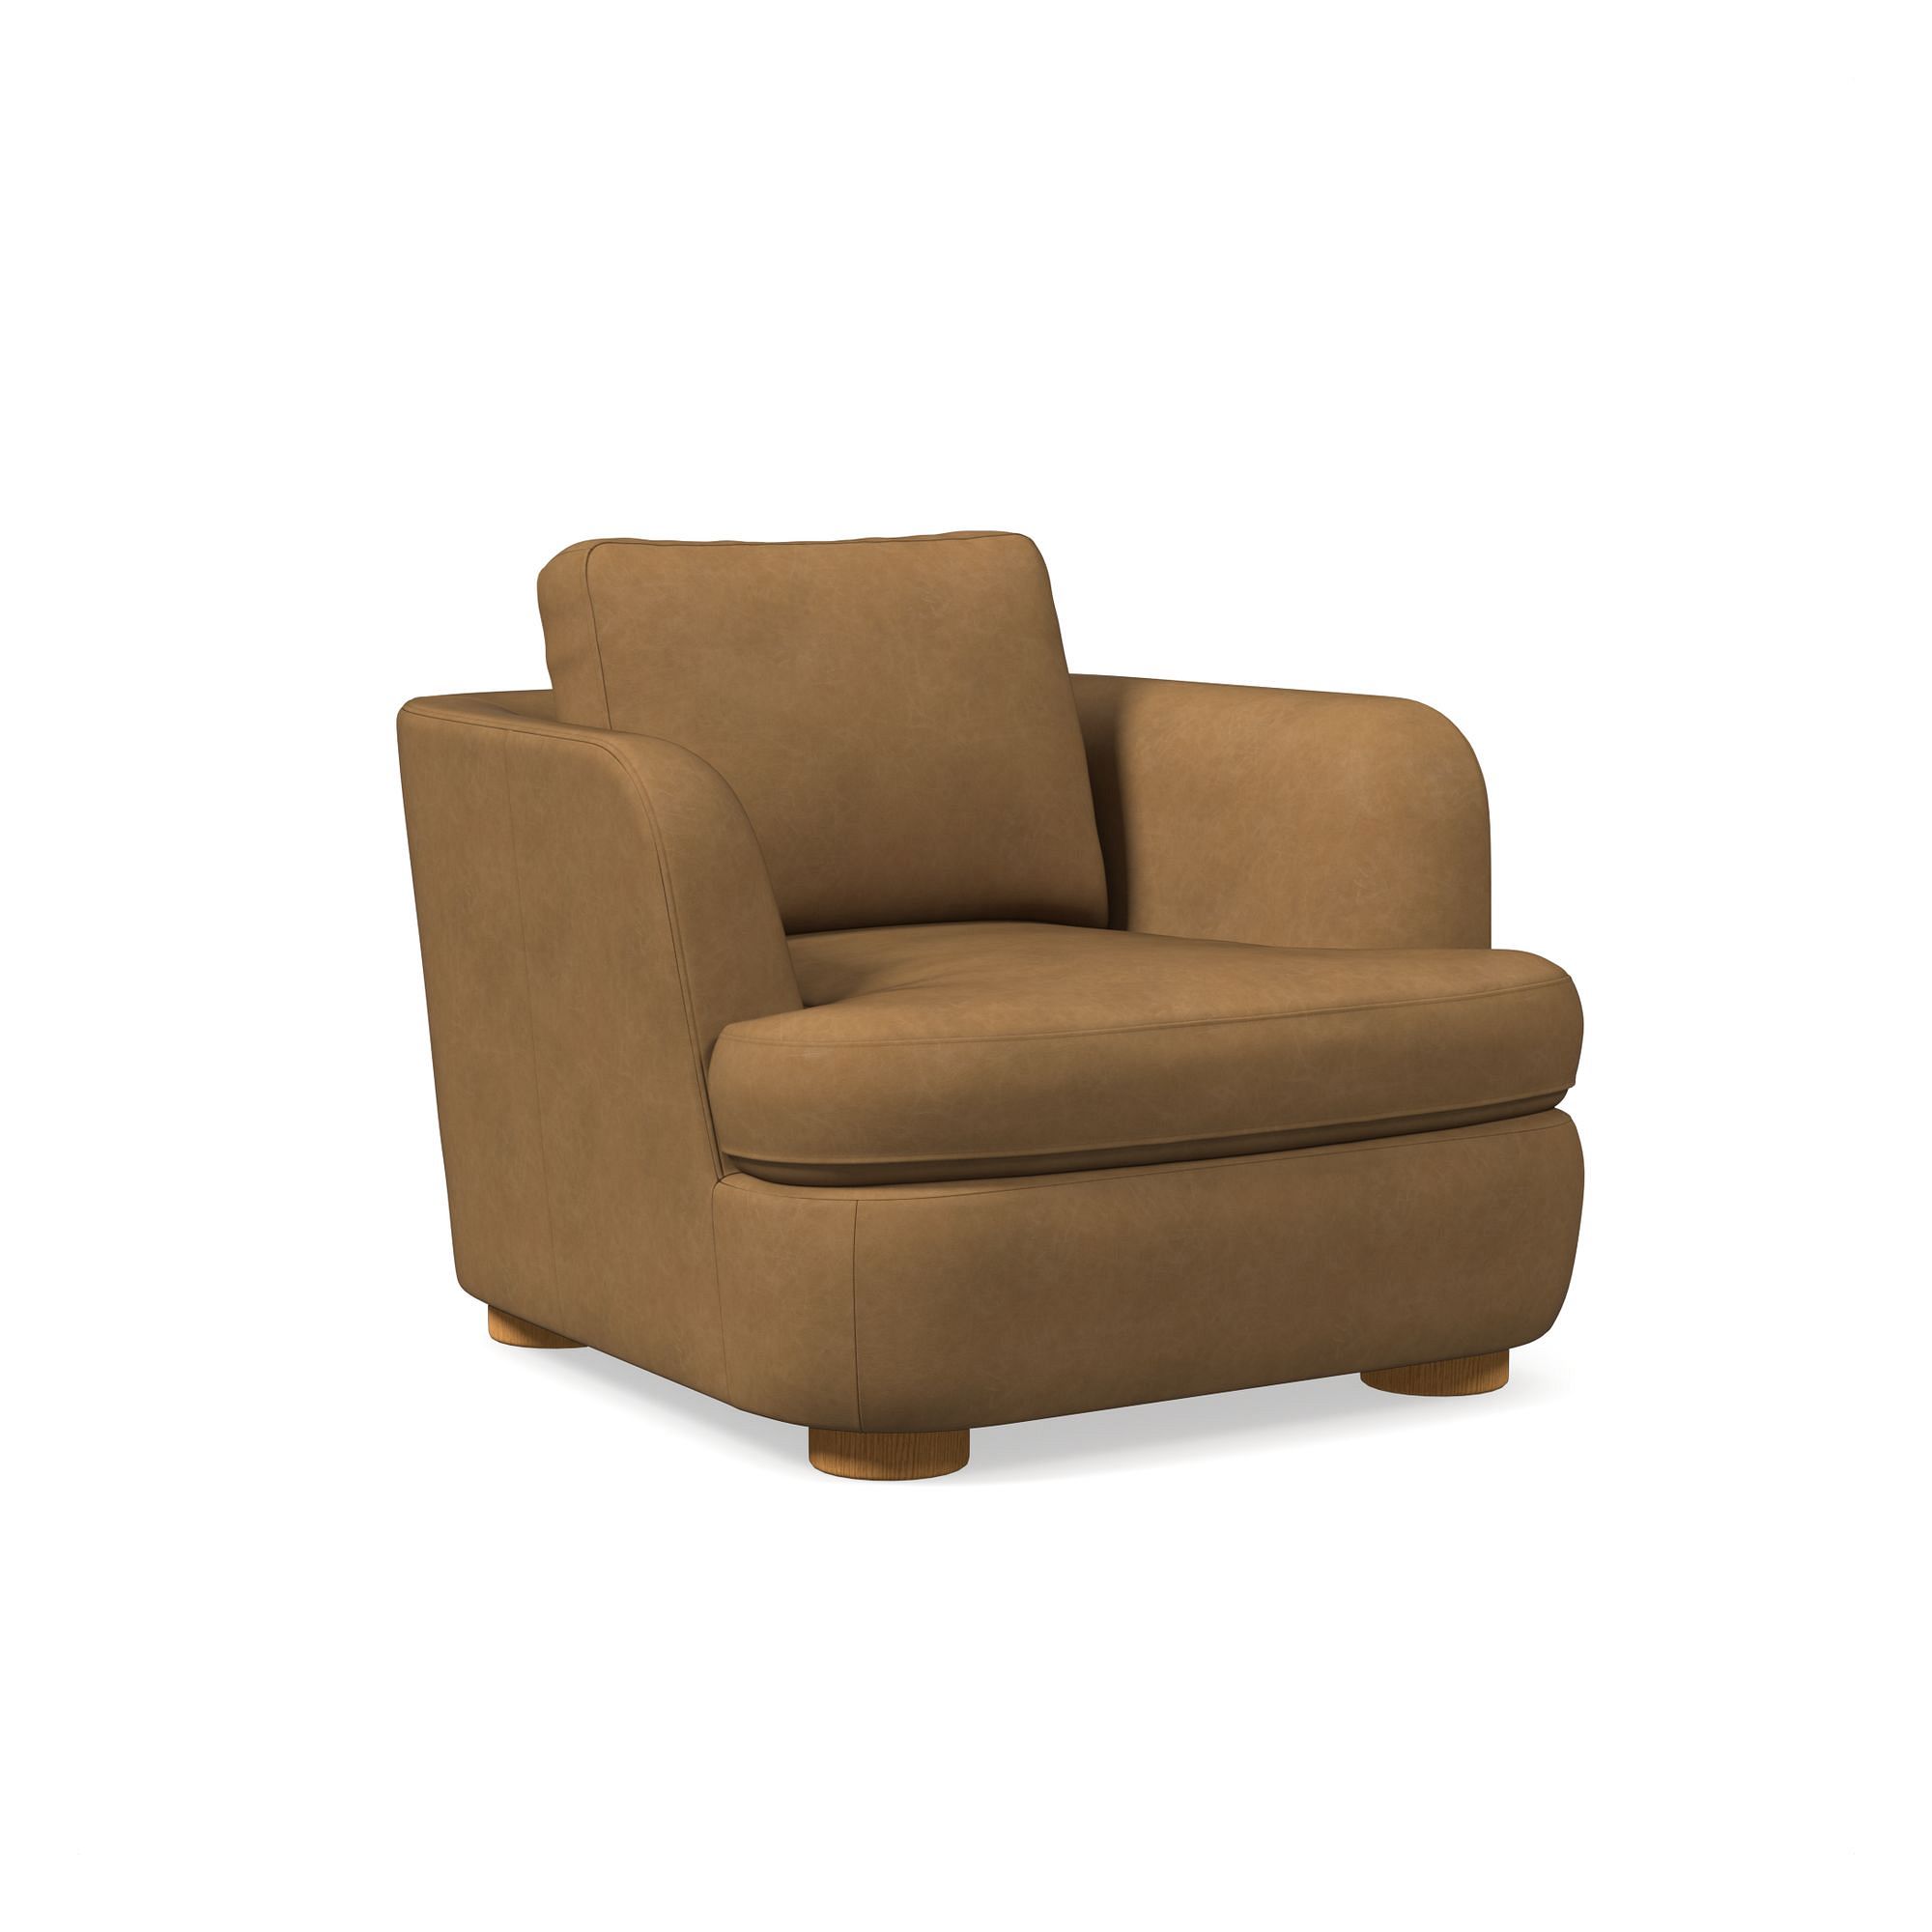 Leroy Leather Chair | West Elm